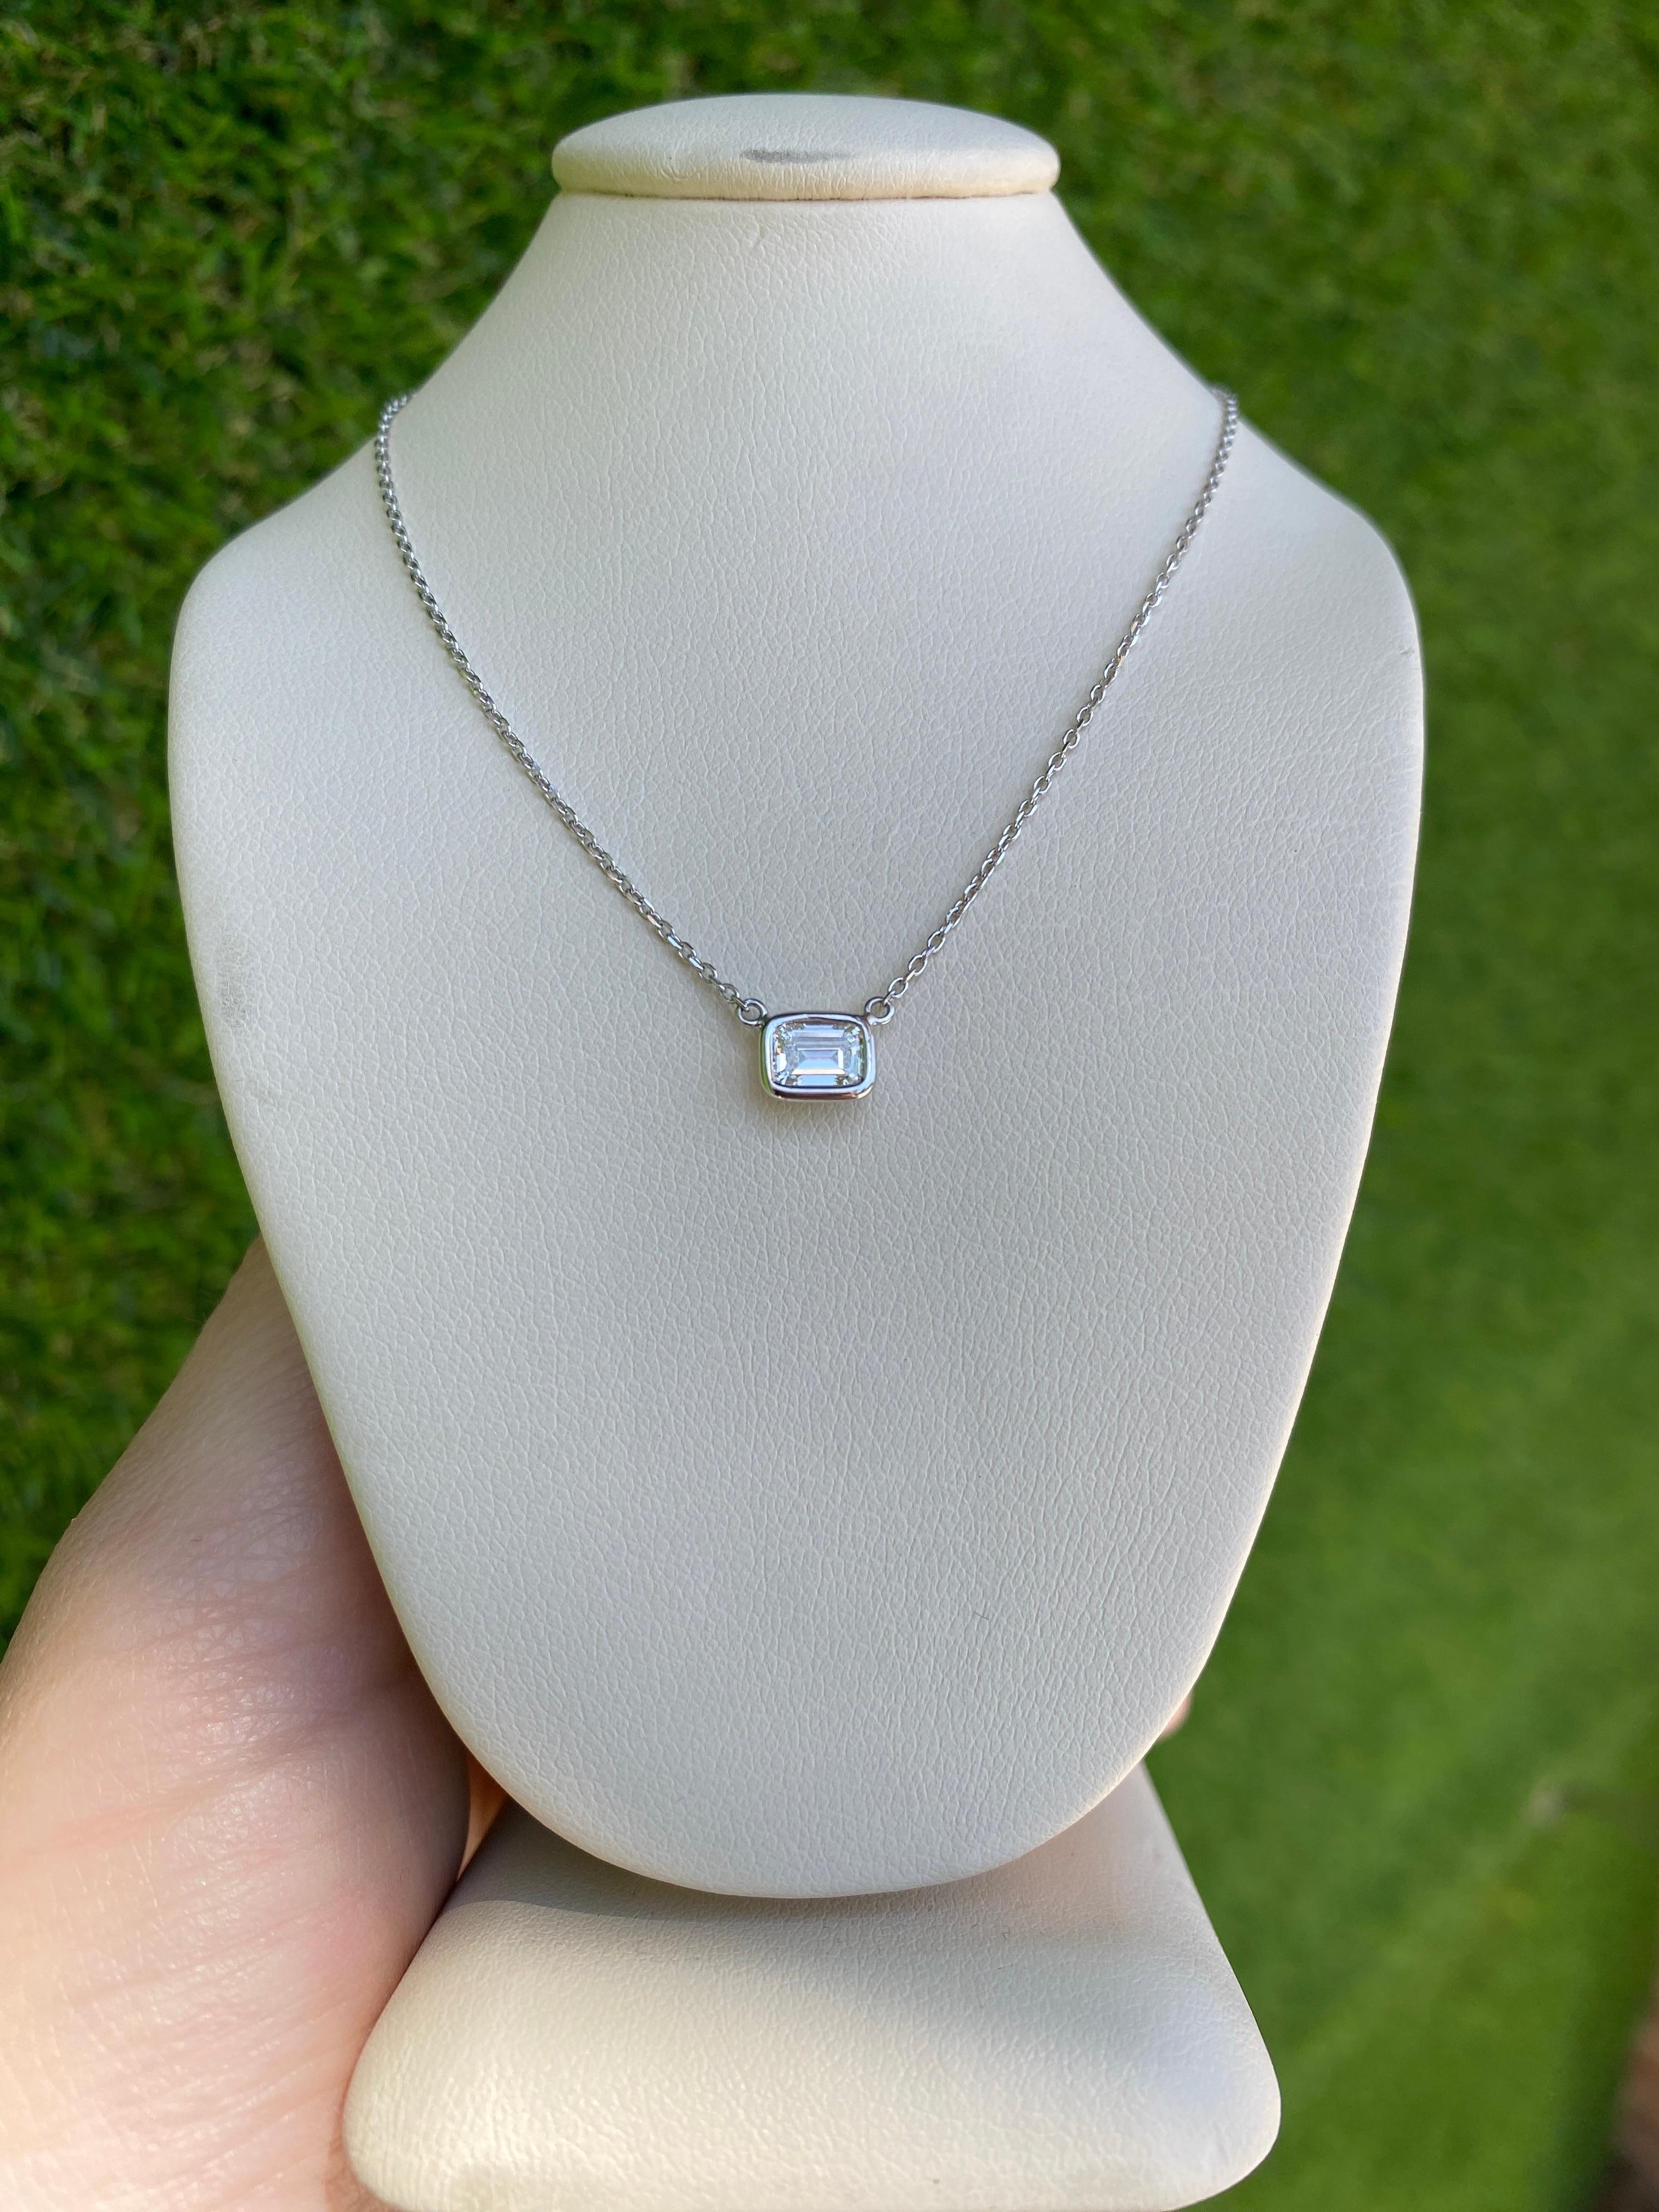 0.44 Carat Natural Emerald Cut Bezel Set Diamond Pendant Necklace 14k White Gold For Sale 6